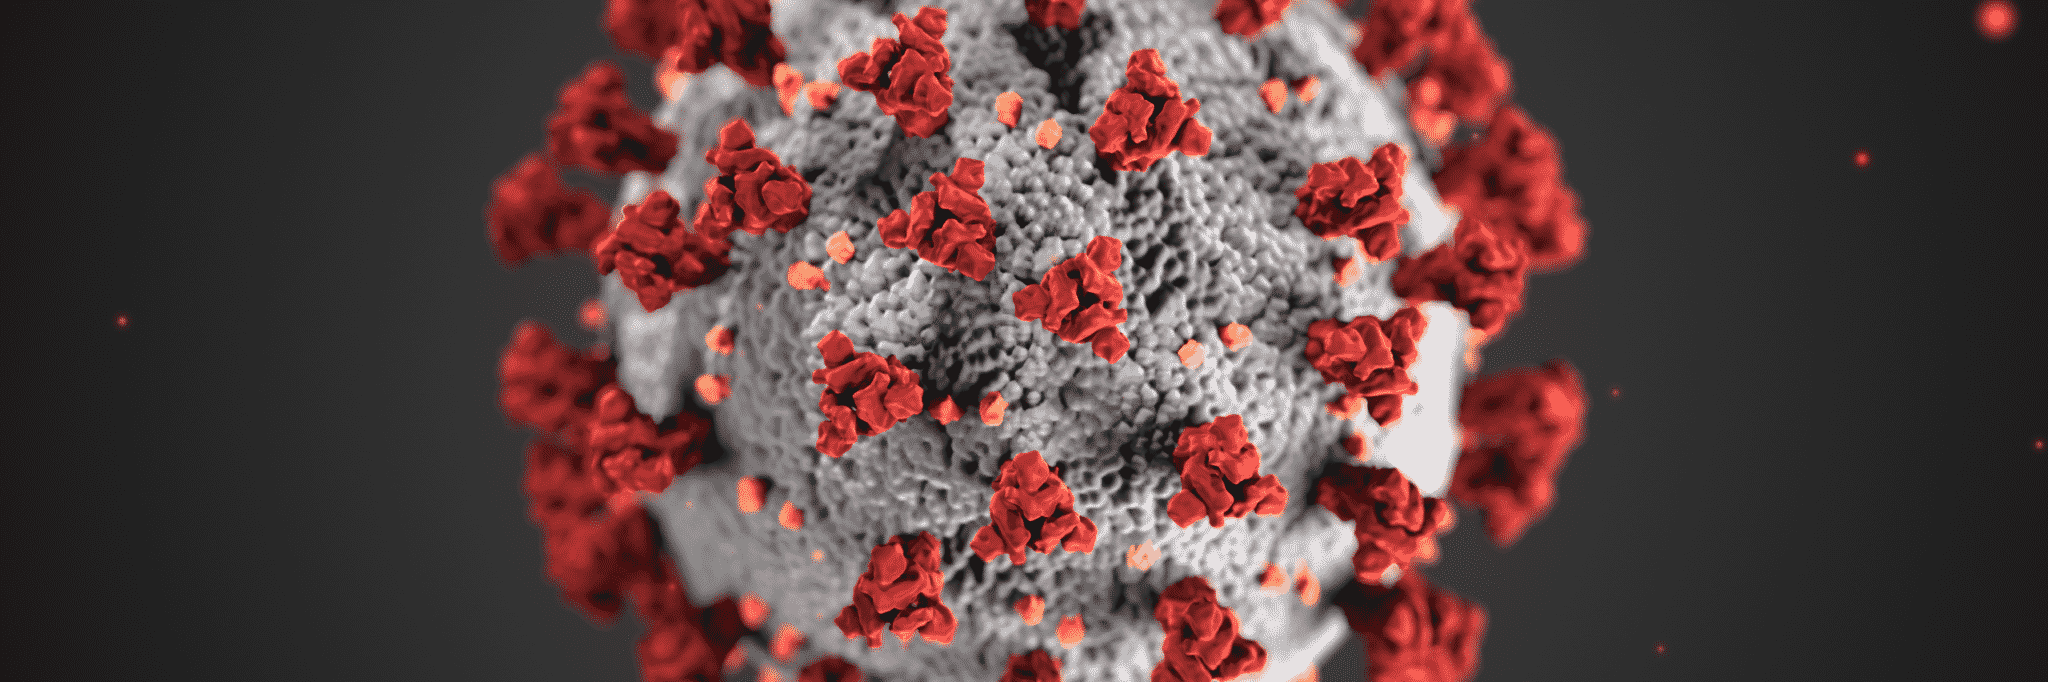 Coronavirus (Image source: U.S. Department of State)